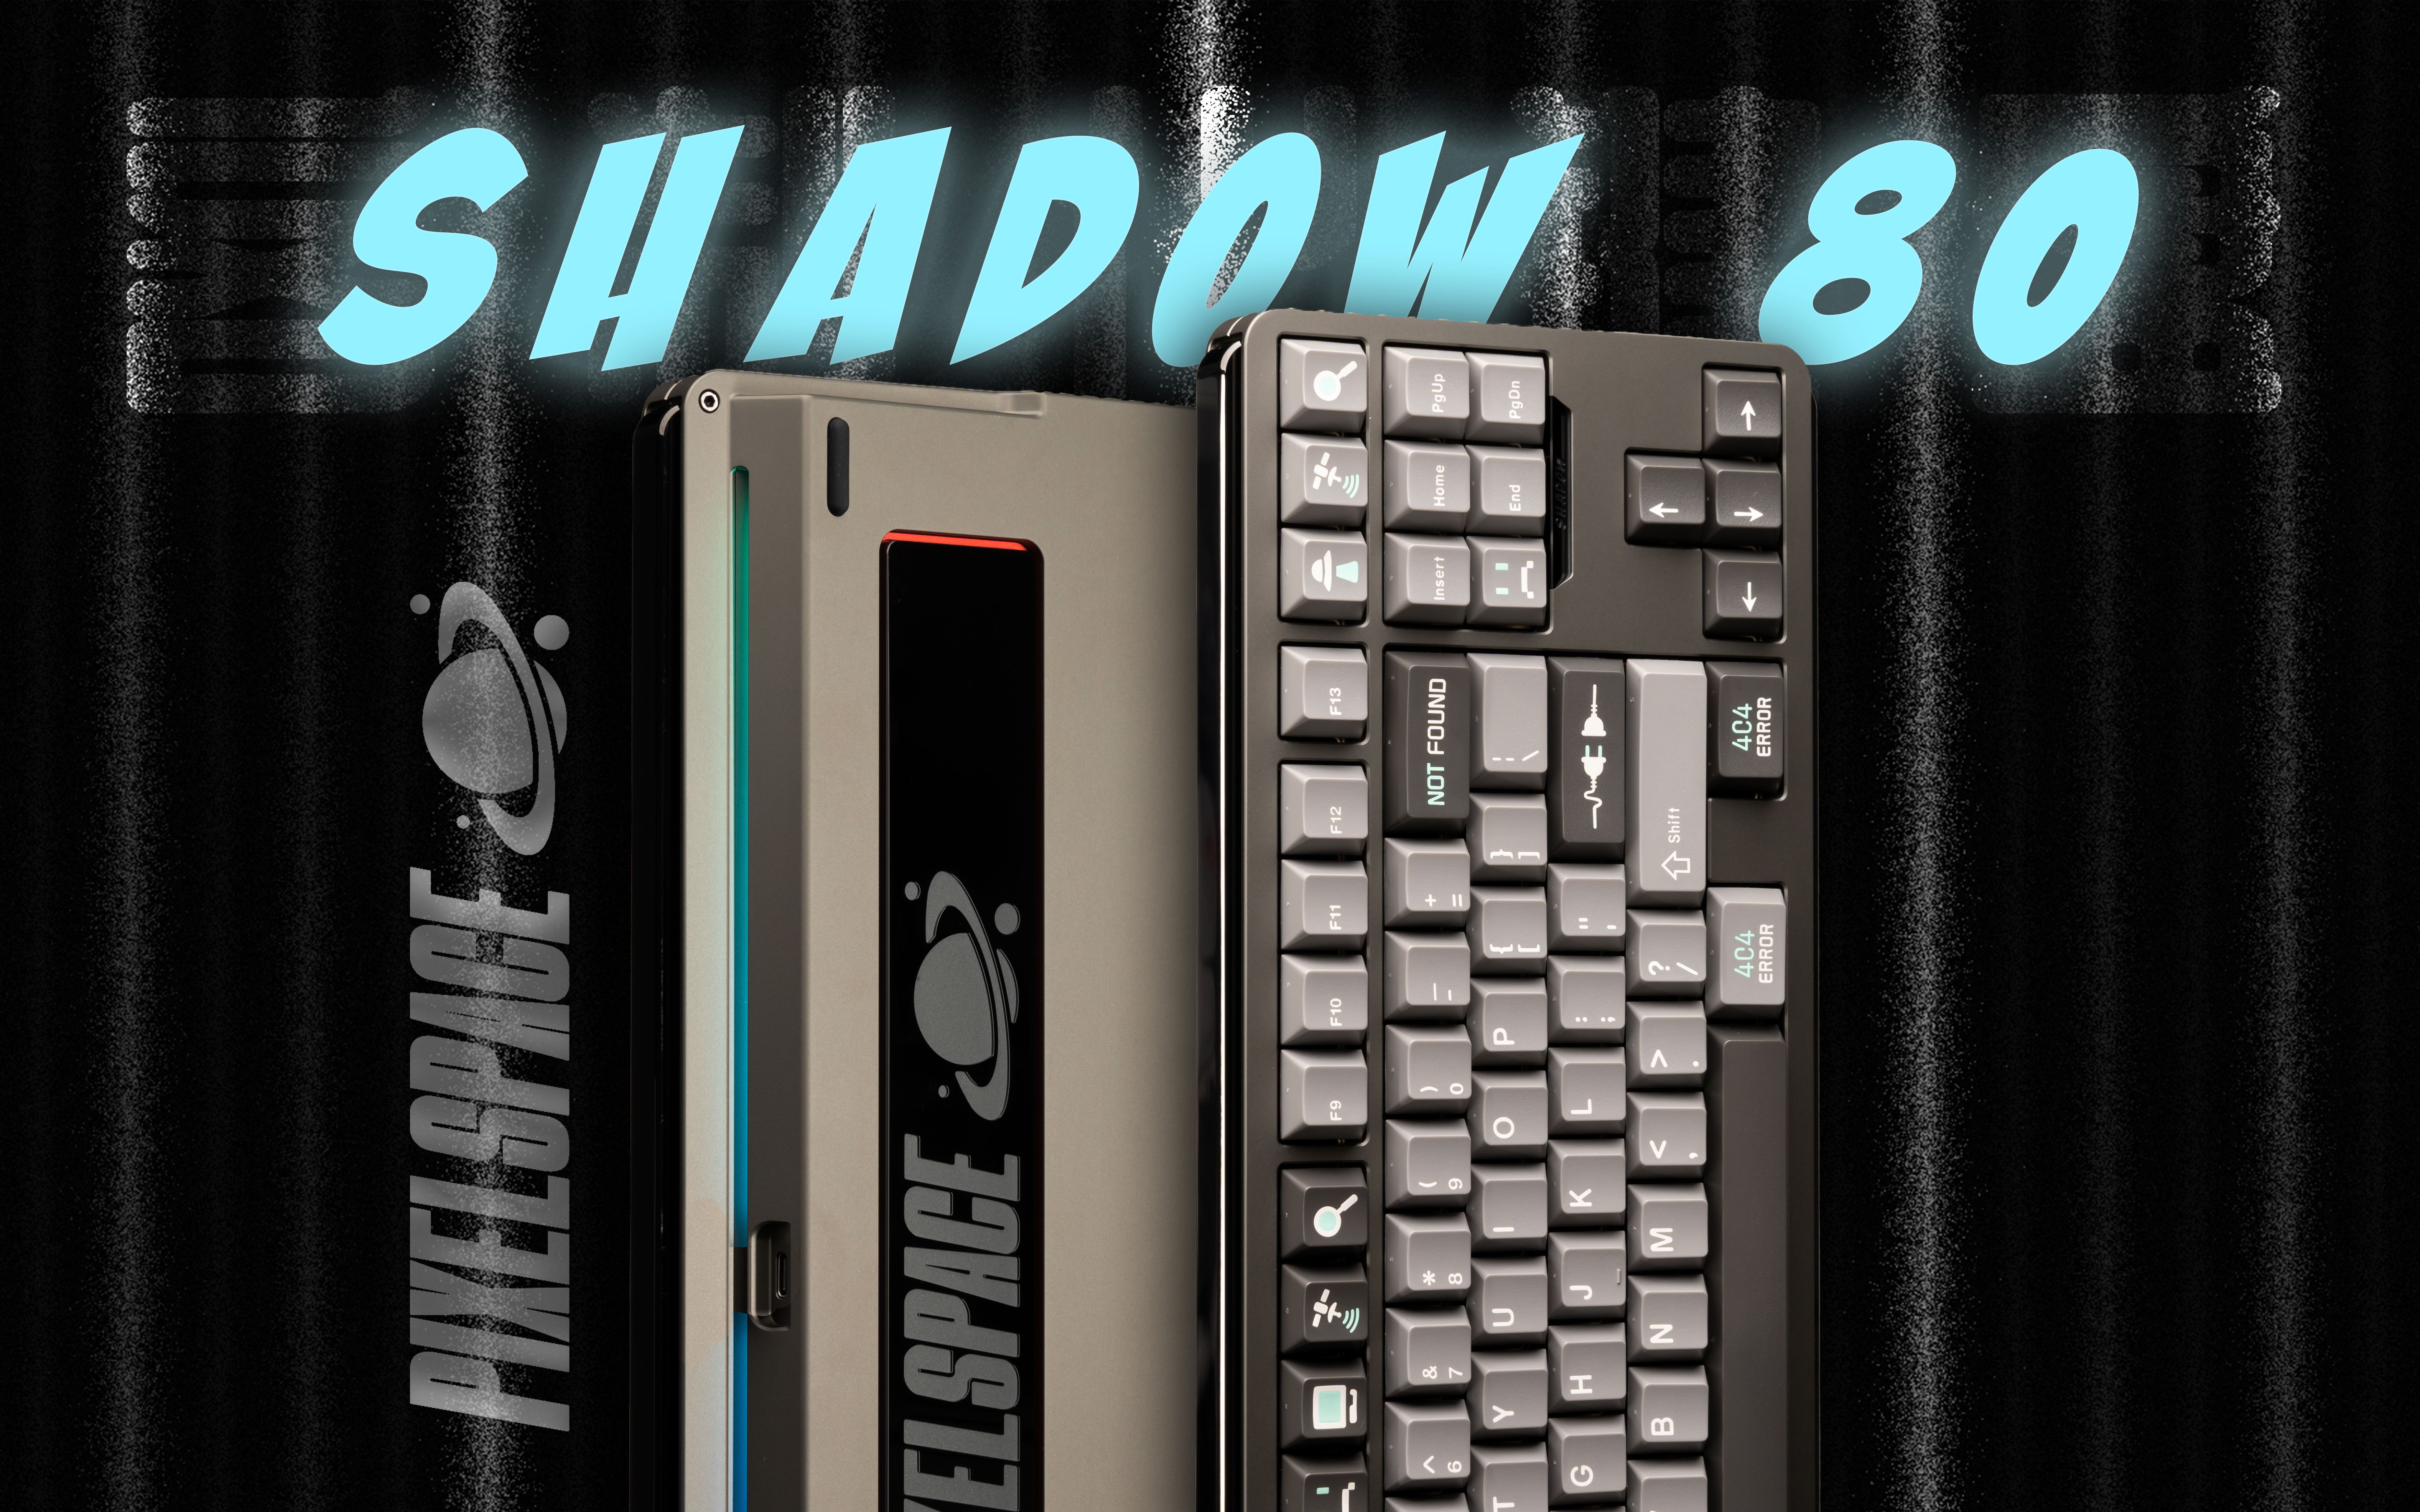 设计出众还声音一流？一把不露锋芒却尽显高级的客制化键盘！丨Shadow 80丨客制化键盘丨沉浸式组装丨打字音